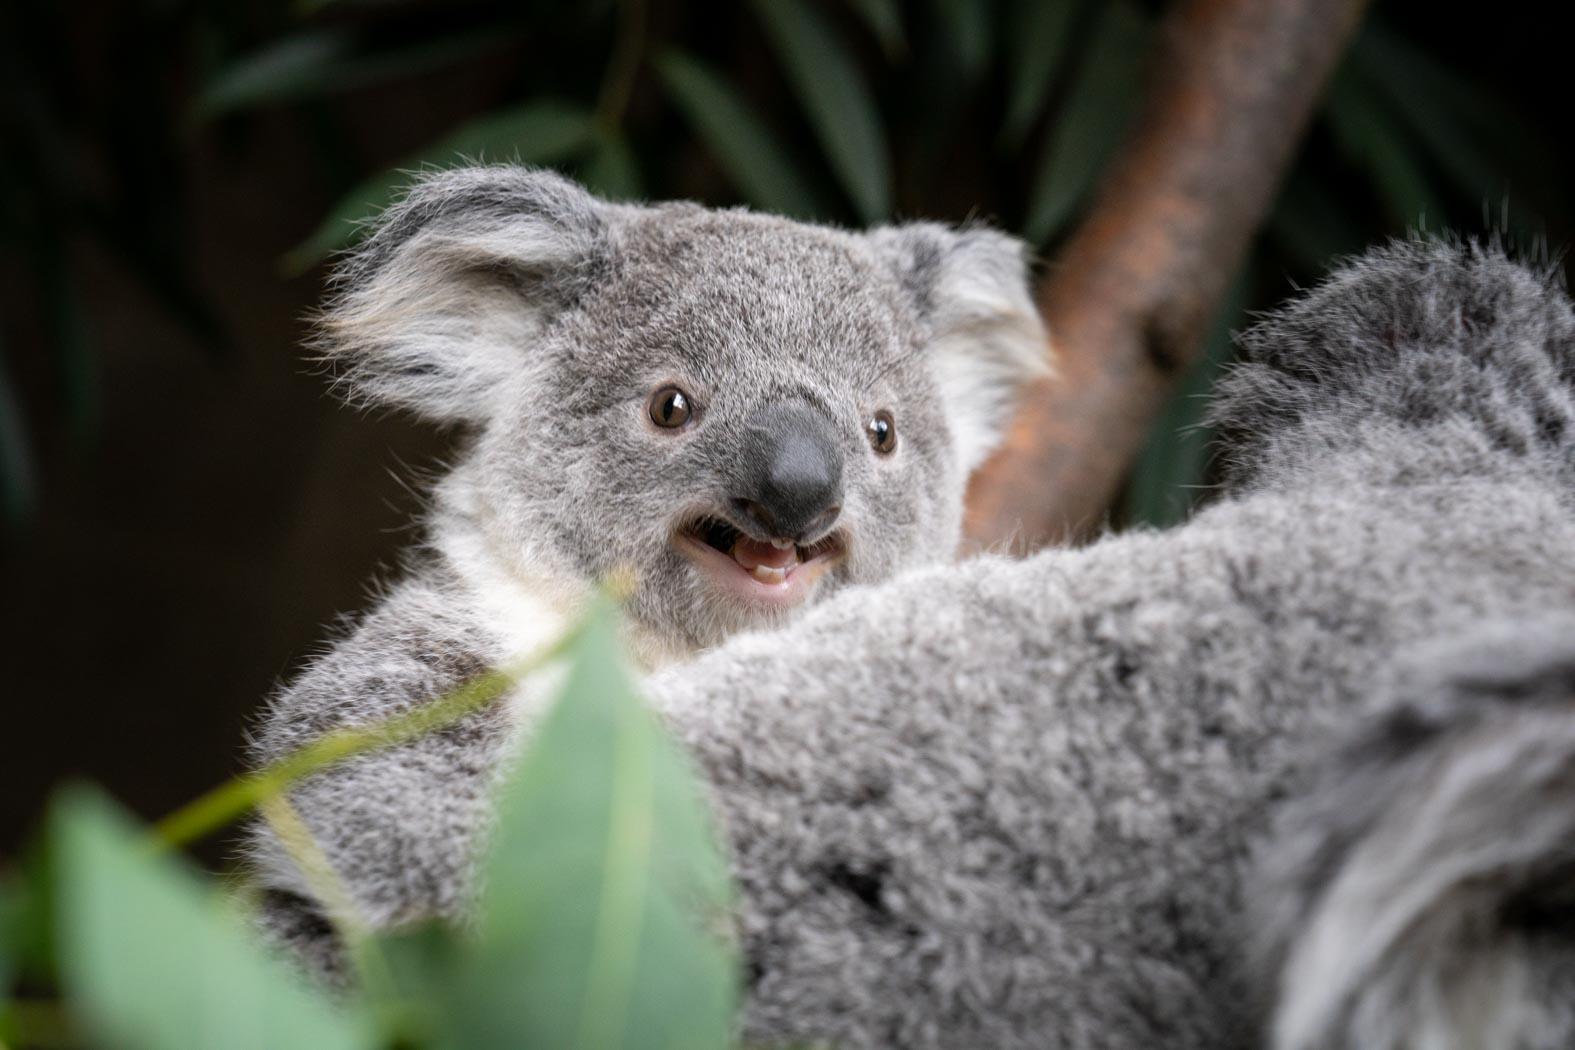 Baby Koalas In Trees